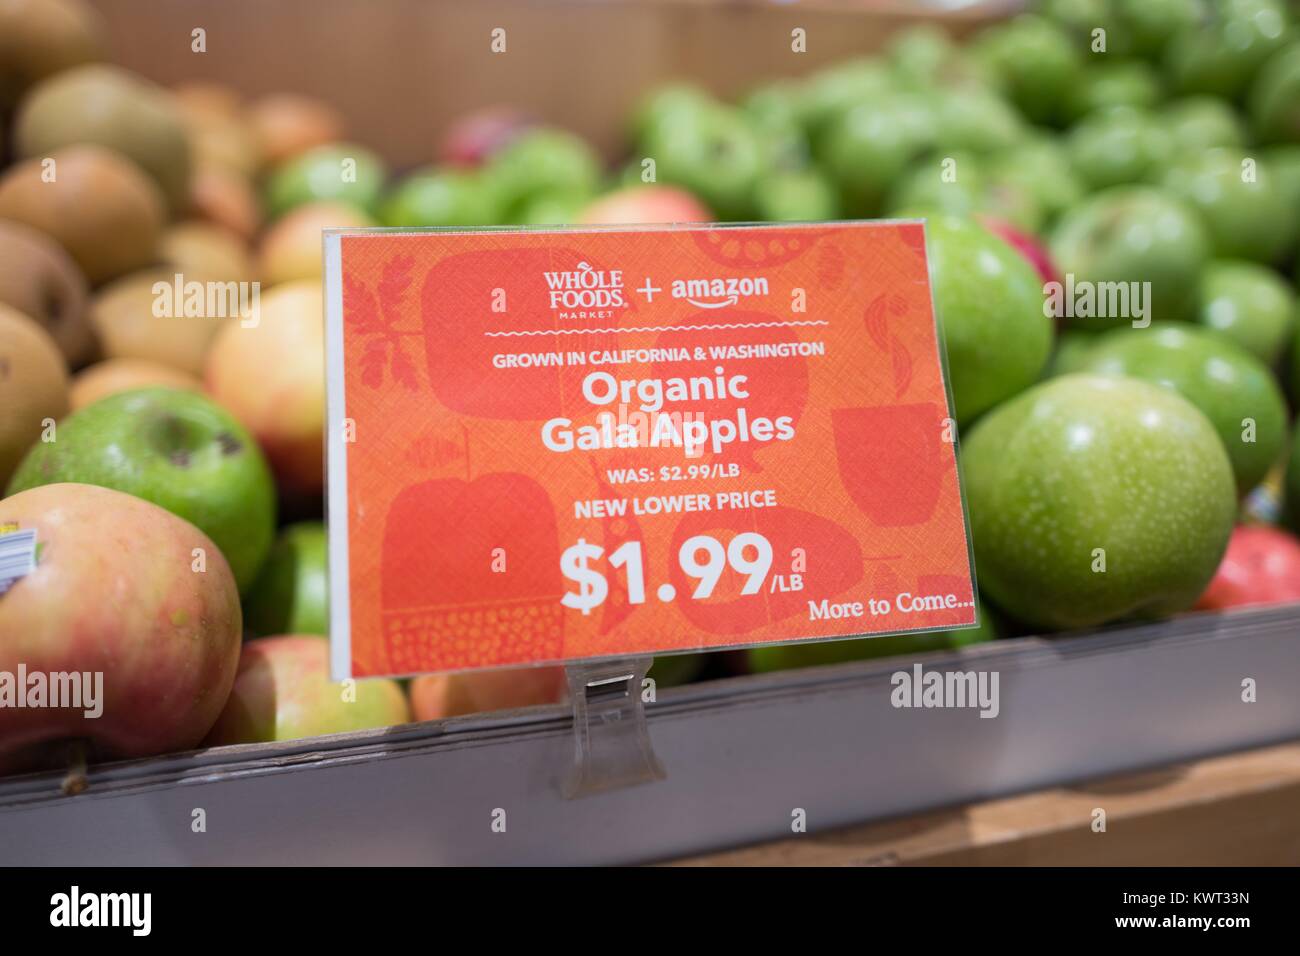 Insegne su un display di mele Gala a Whole Foods Market Store di San Ramon,  California la lettura "Whole Foods Market e Amazon, nuovo prezzo più basso,  più a venire", annunciando Whole